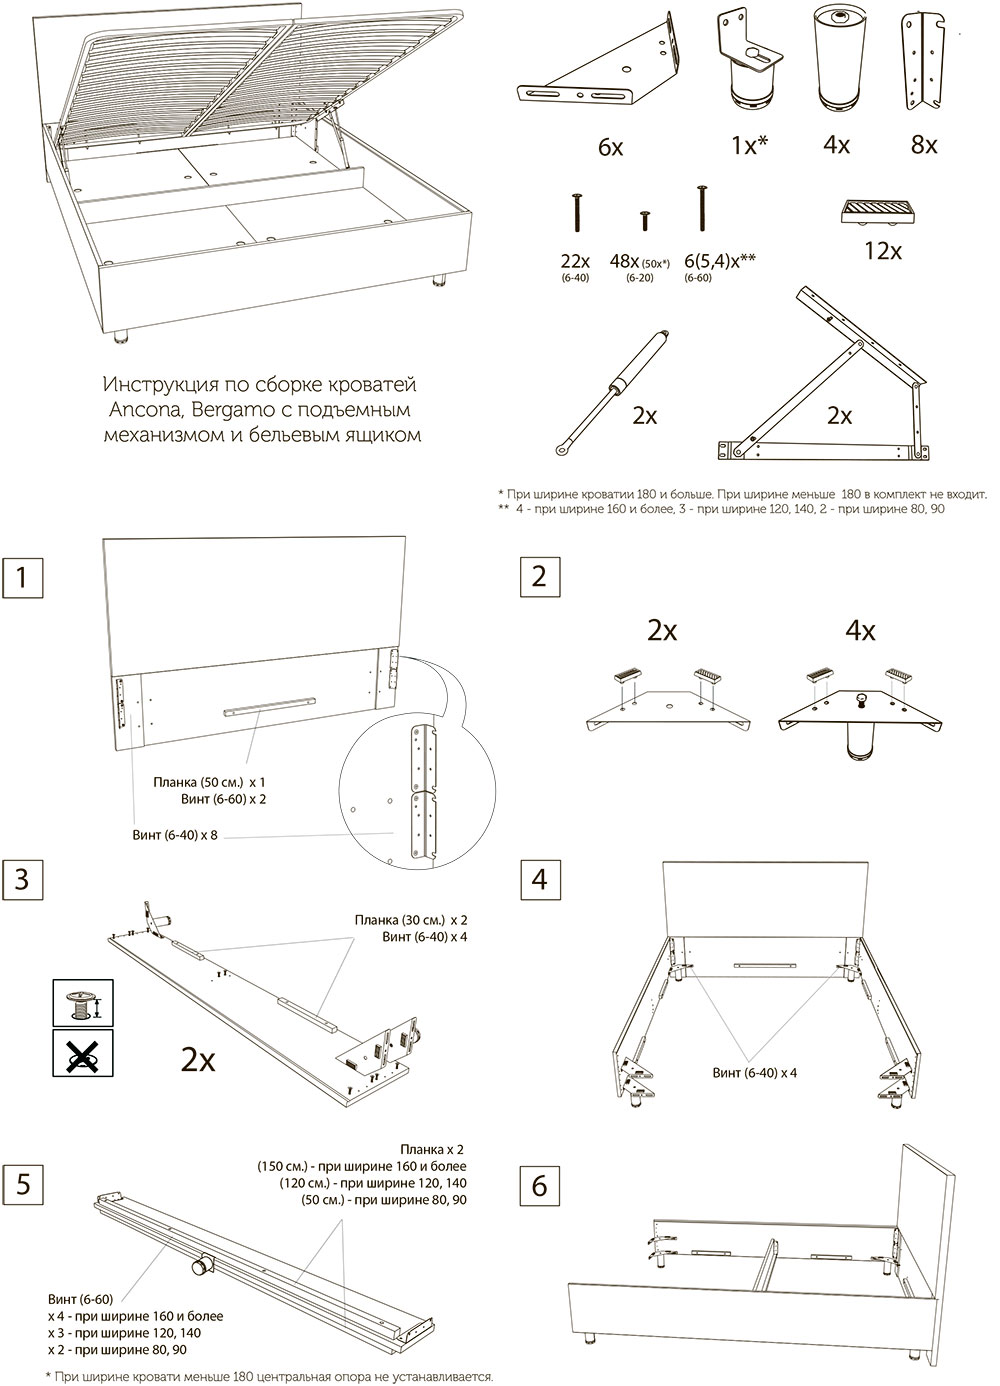 Пошаговые инструкции по изготовлению эксклюзивной модели кровати: необходимые материалы и инструменты для монтажа кровати